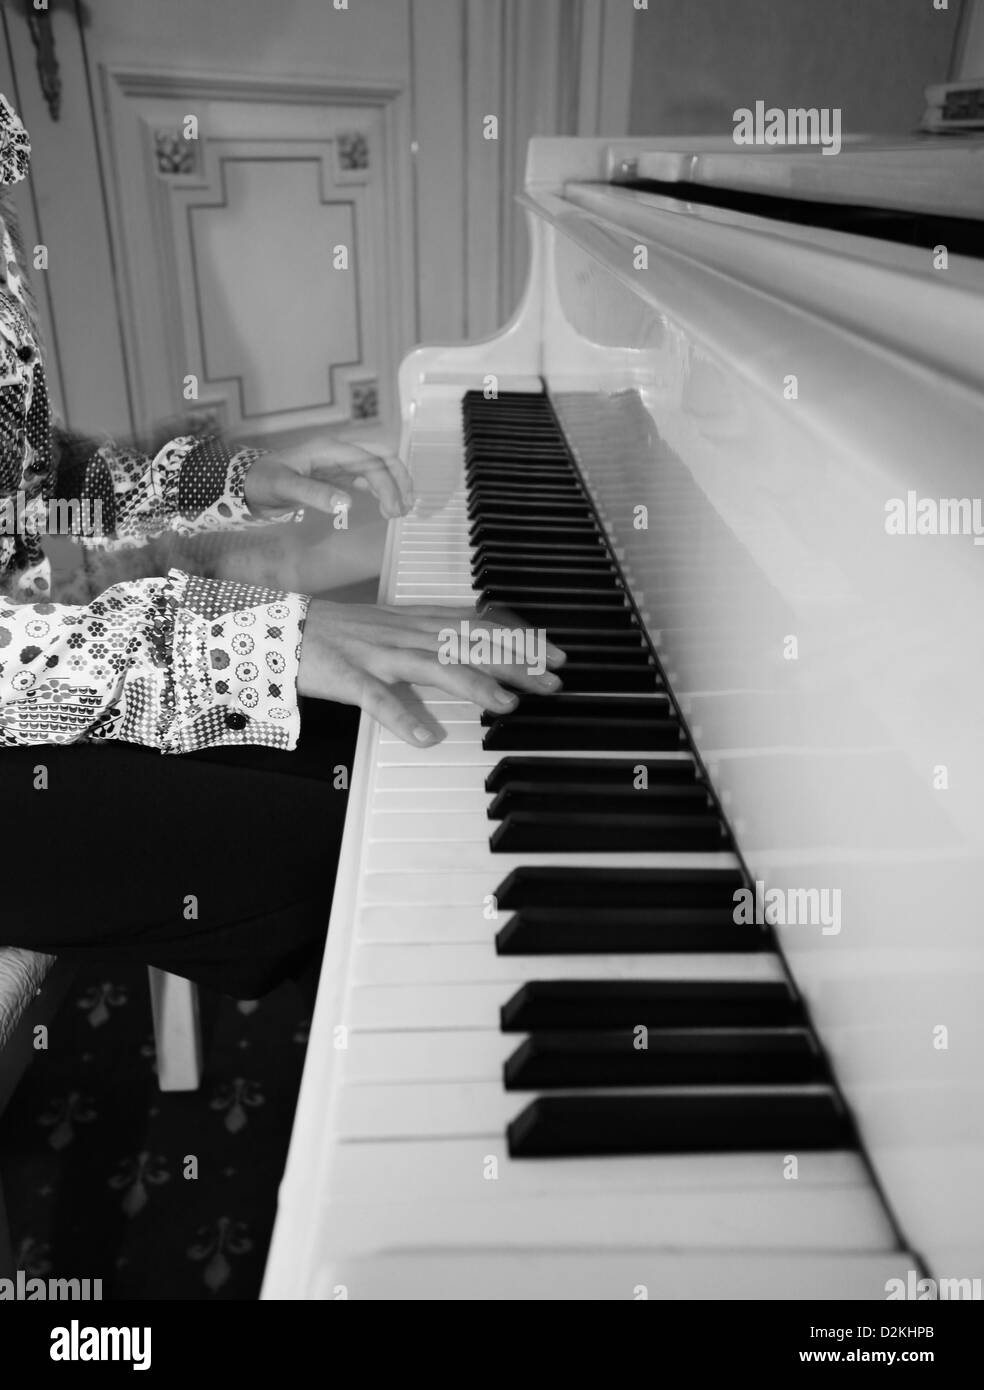 Piano inside Banque d'images noir et blanc - Page 2 - Alamy